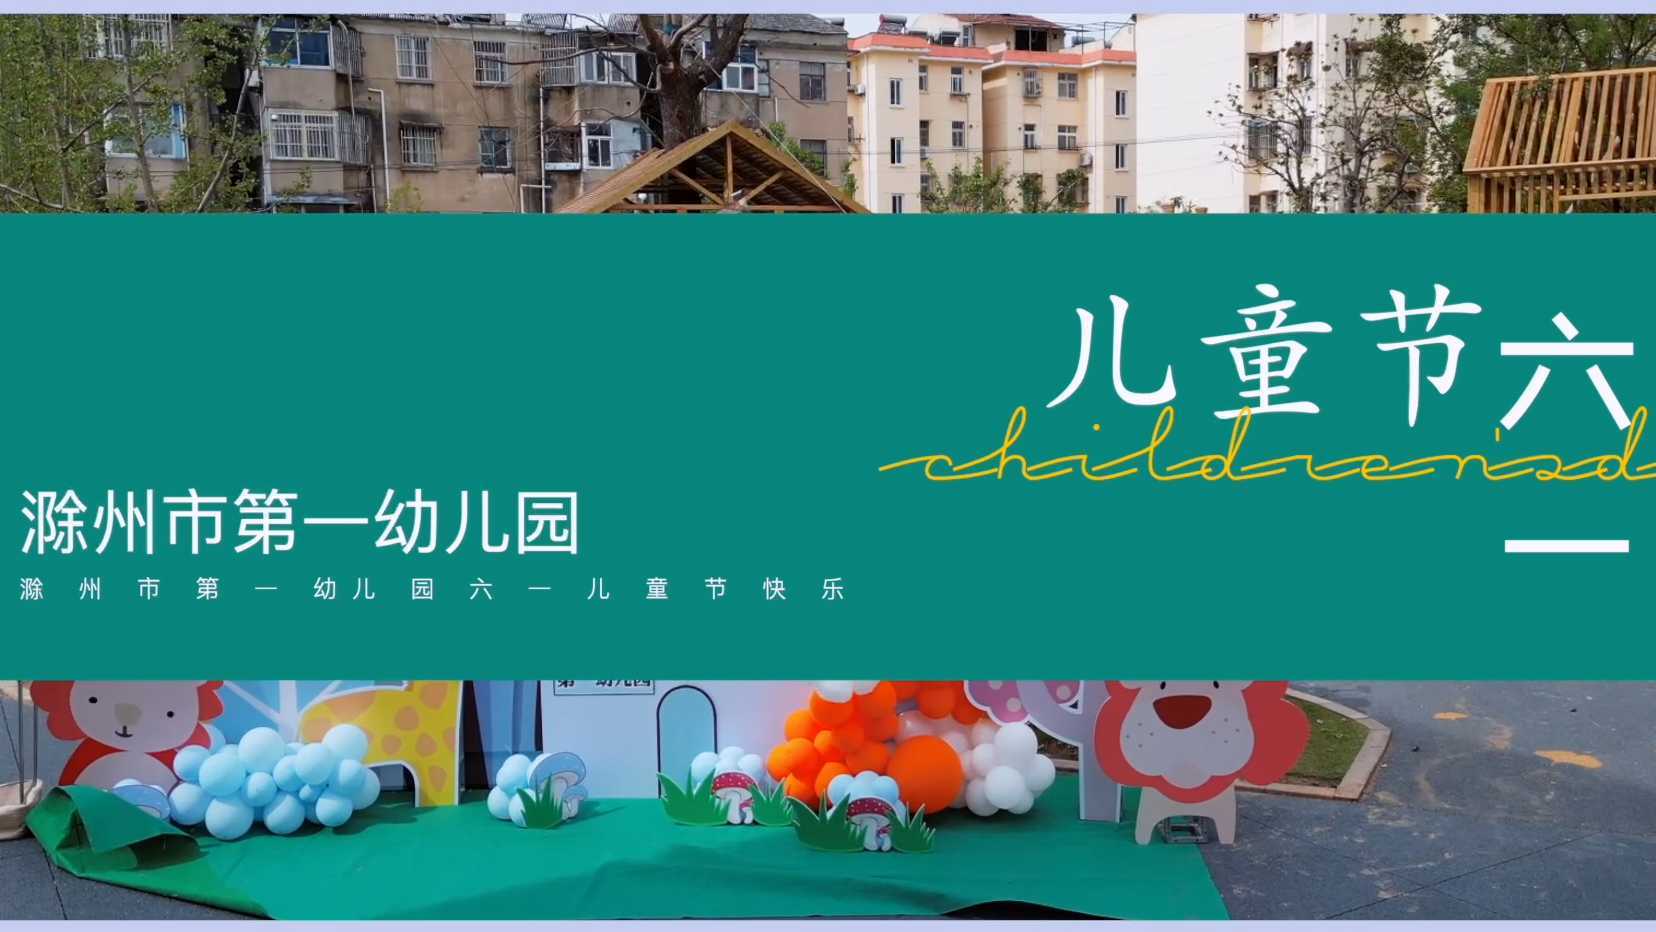 2022.6.1 滁州市第一幼儿园六一活动